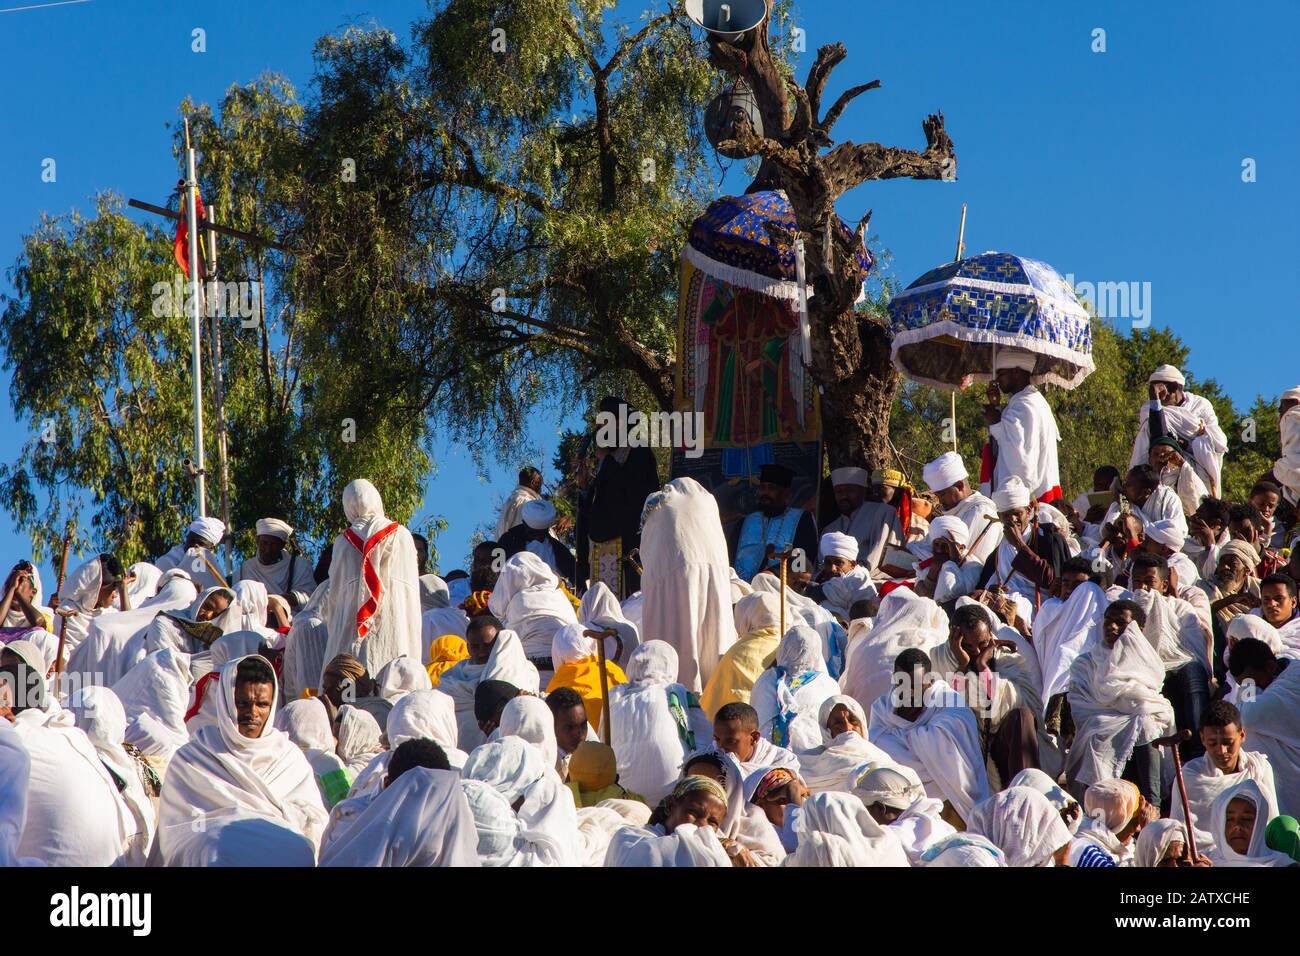 Lalibela, Ethiopie - Nov 2018: Foule de pèlerins vêtus de couleurs blanches éthiopiennes traditionnelles se rassemblant à l'extérieur des églises souterraines de Lalibela. Banque D'Images